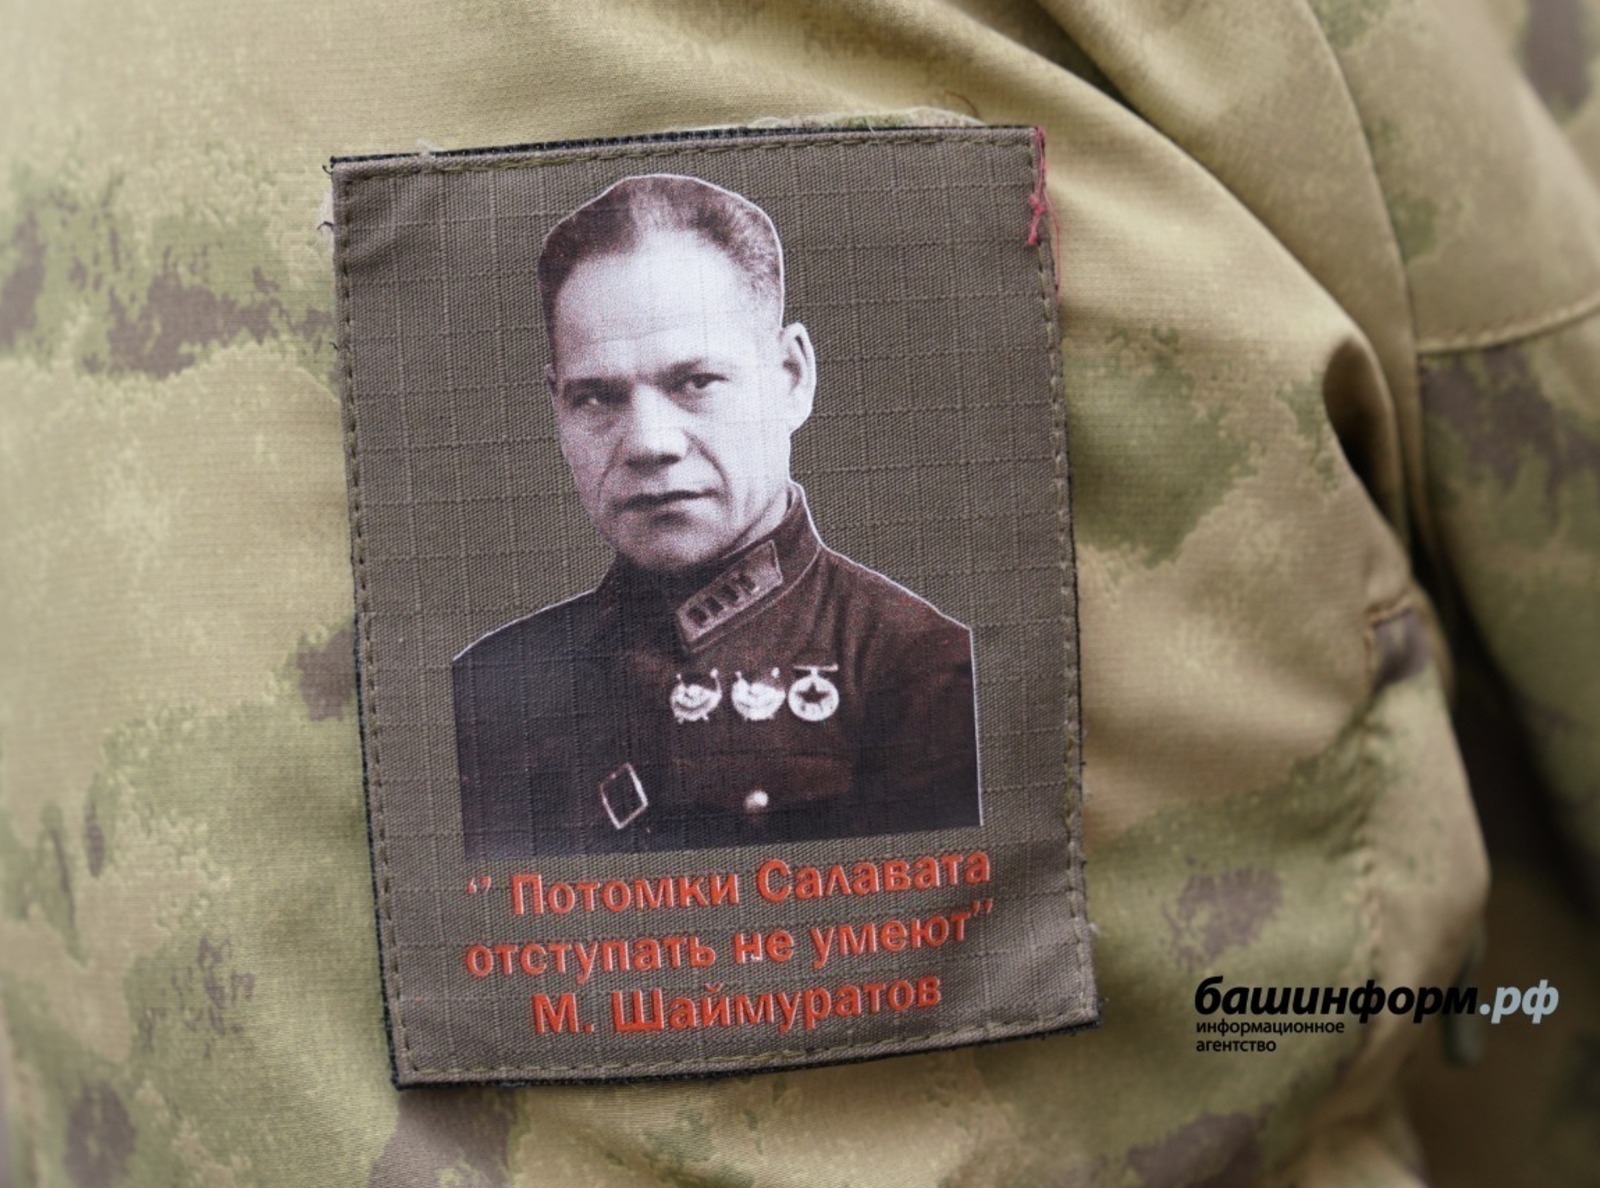 Песня «Шаймуратов-генерал» вдохновляет башкирских бойцов на СВО